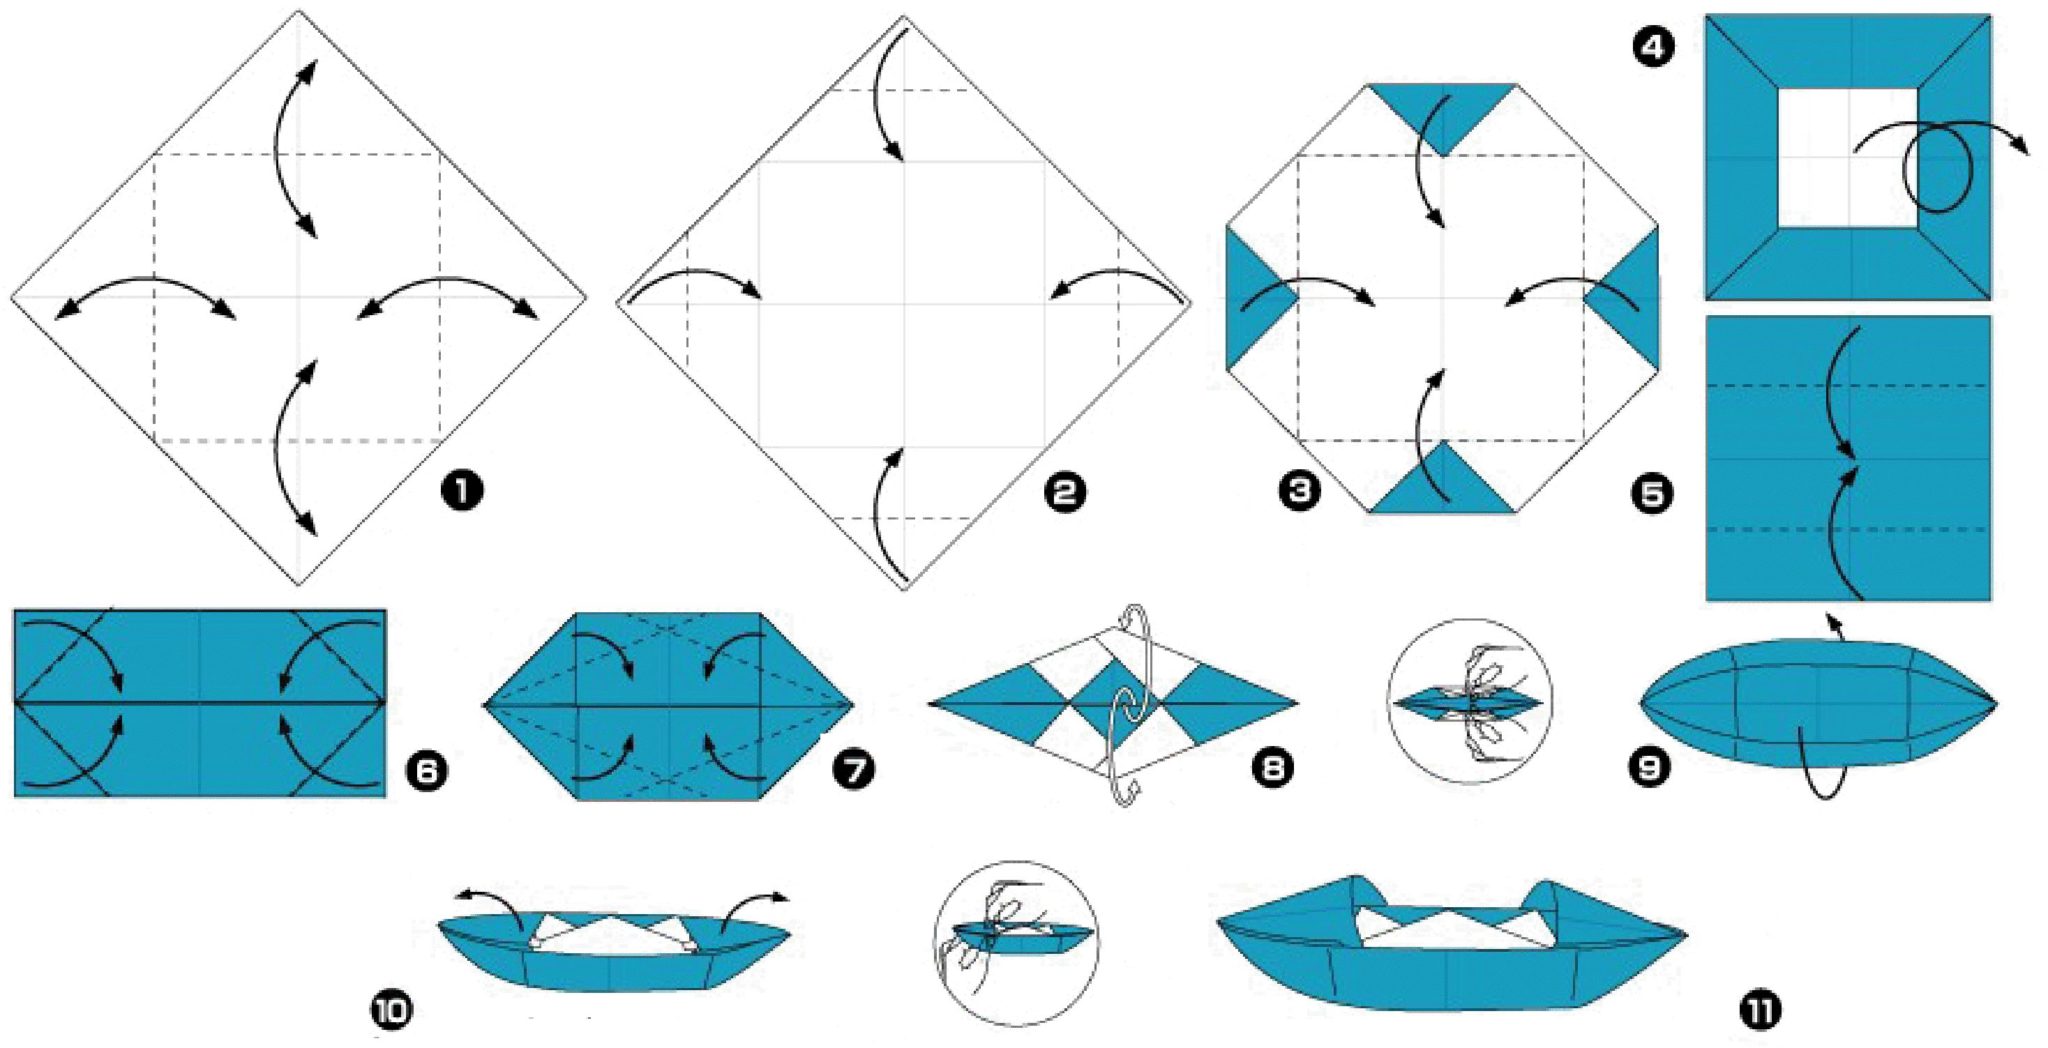 Как сделать кораблик из бумаги фото. Кораблик оригами из бумаги для детей схема. Как сделать оригами кораблик из бумаги а4. Бумажный кораблик схема складывания пошагово из бумаги. Кораблик из бумаги схема а4.